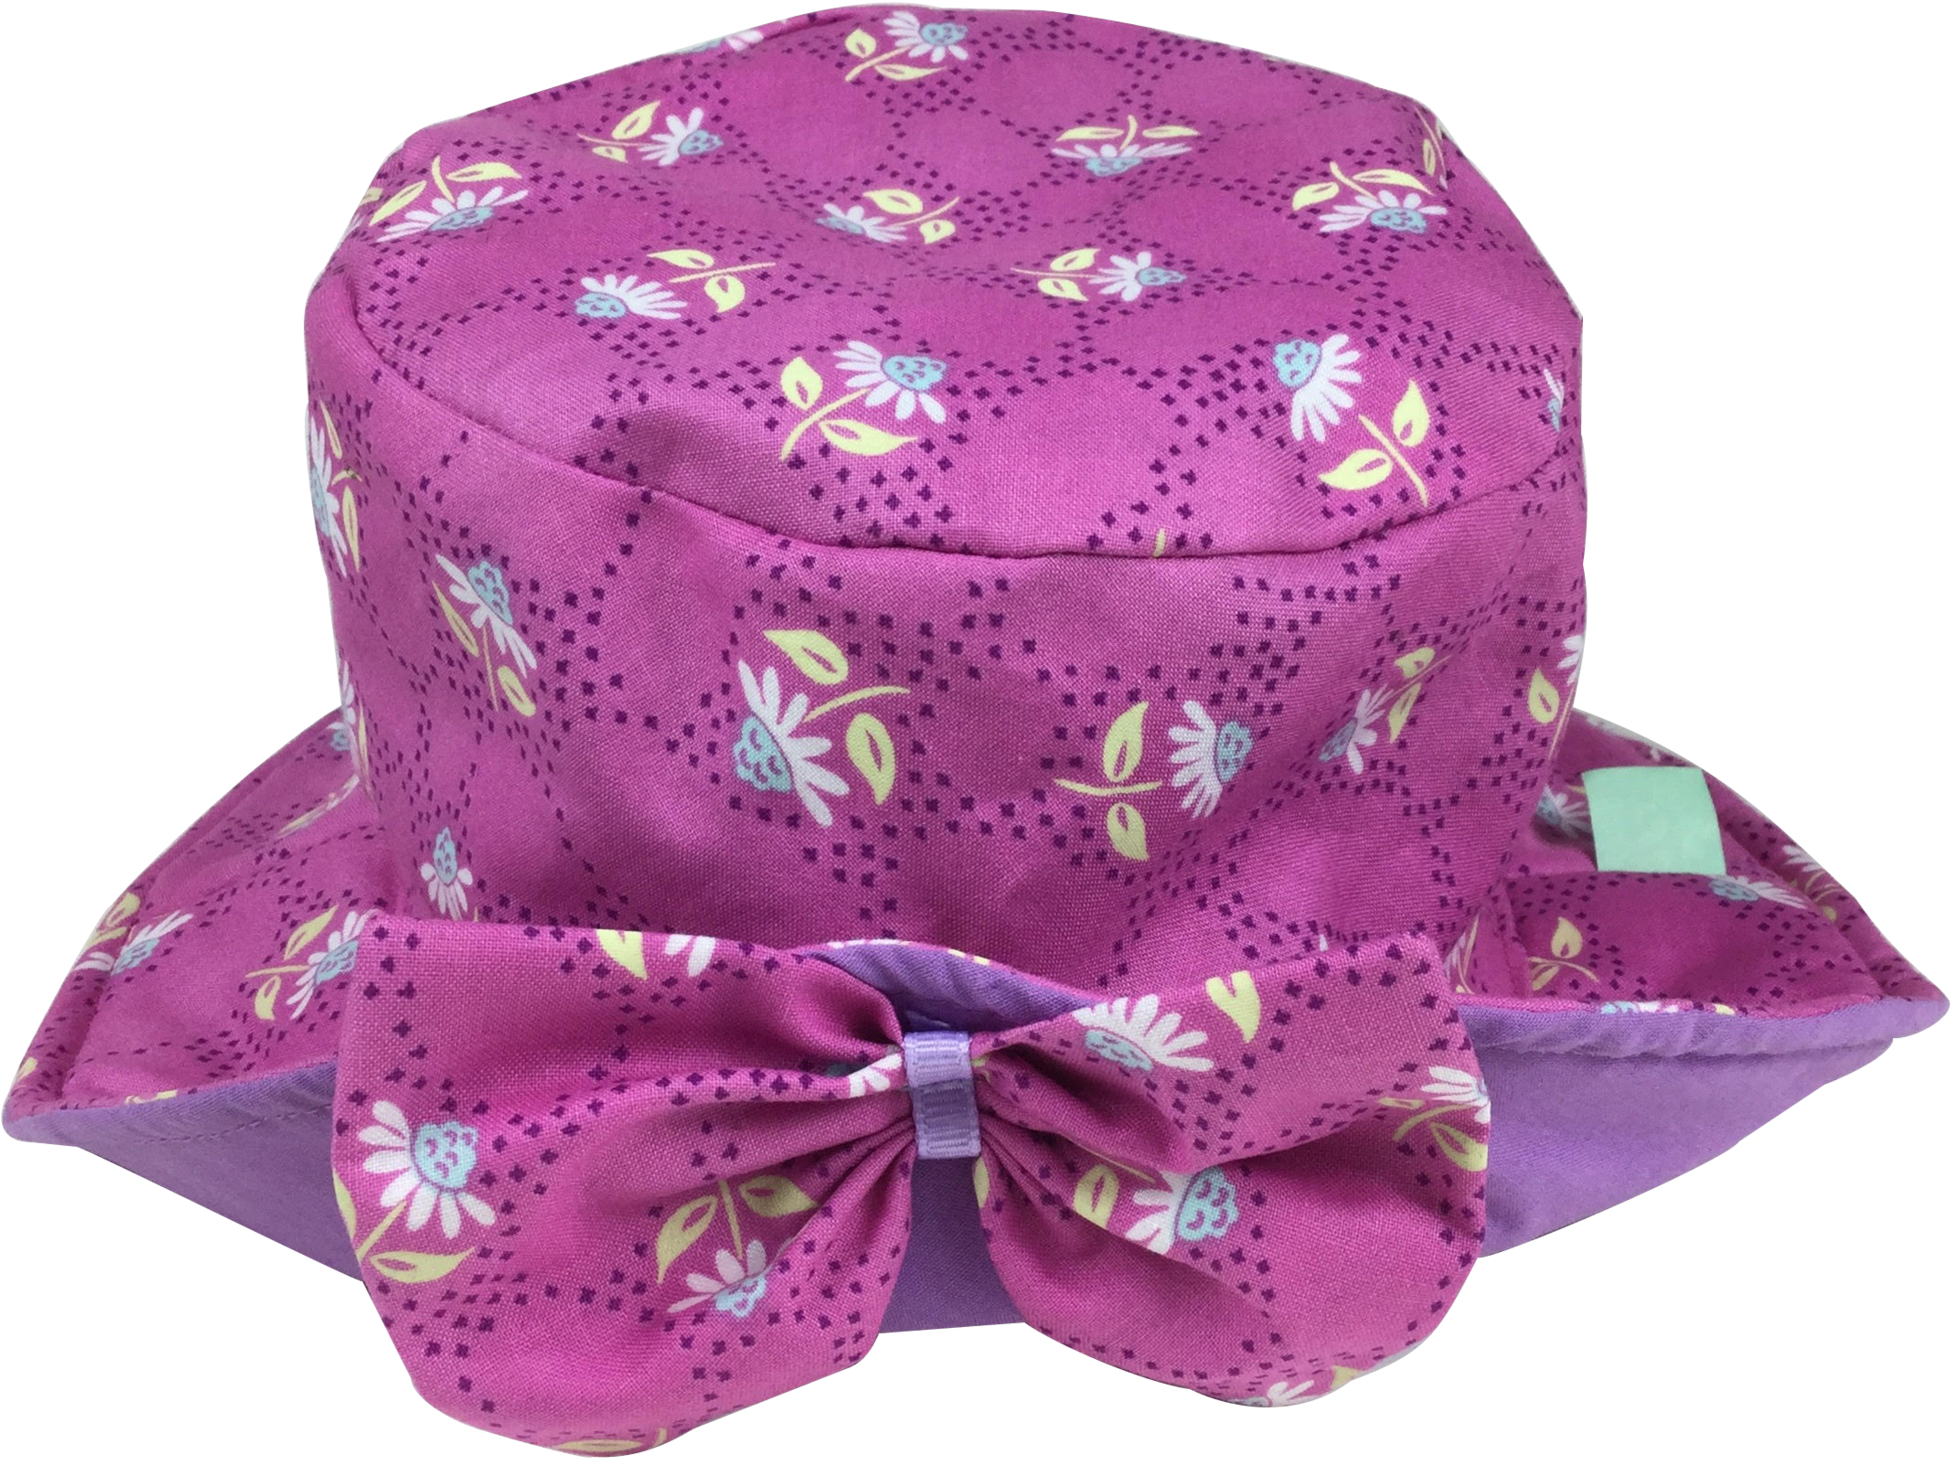 Floral Patterned Pink Sun Hat PNG image